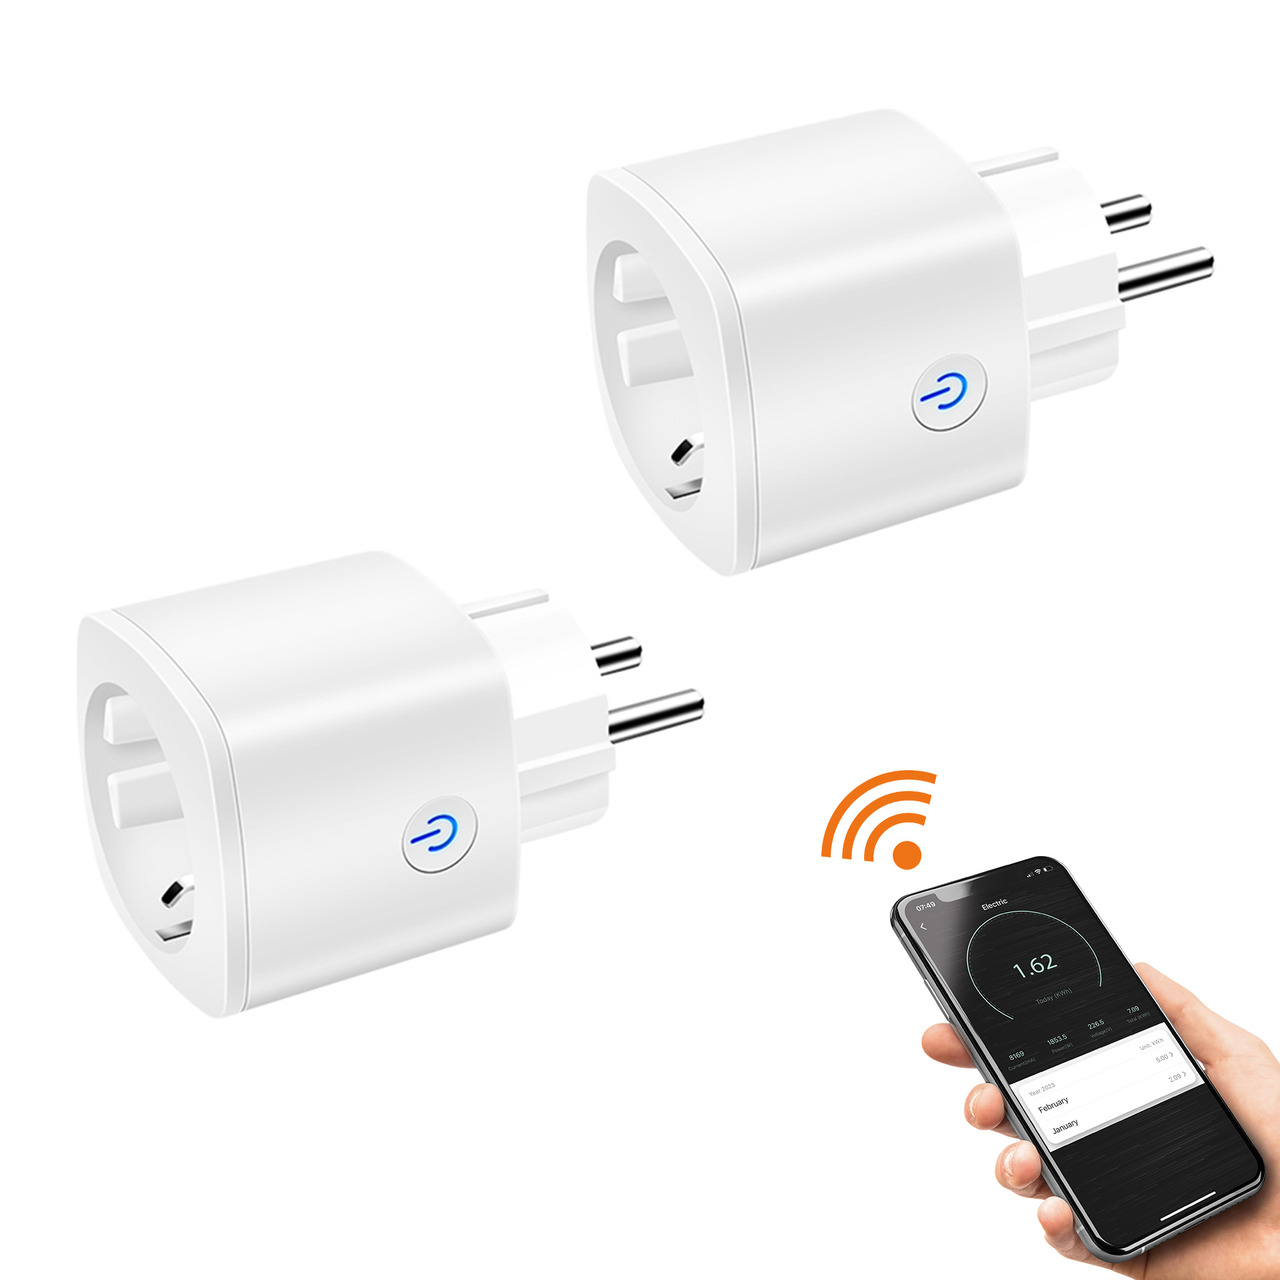 Laxihub 2er-Set smarte WiFi-Steckdose mit Energiemessung und App unter Haustechnik